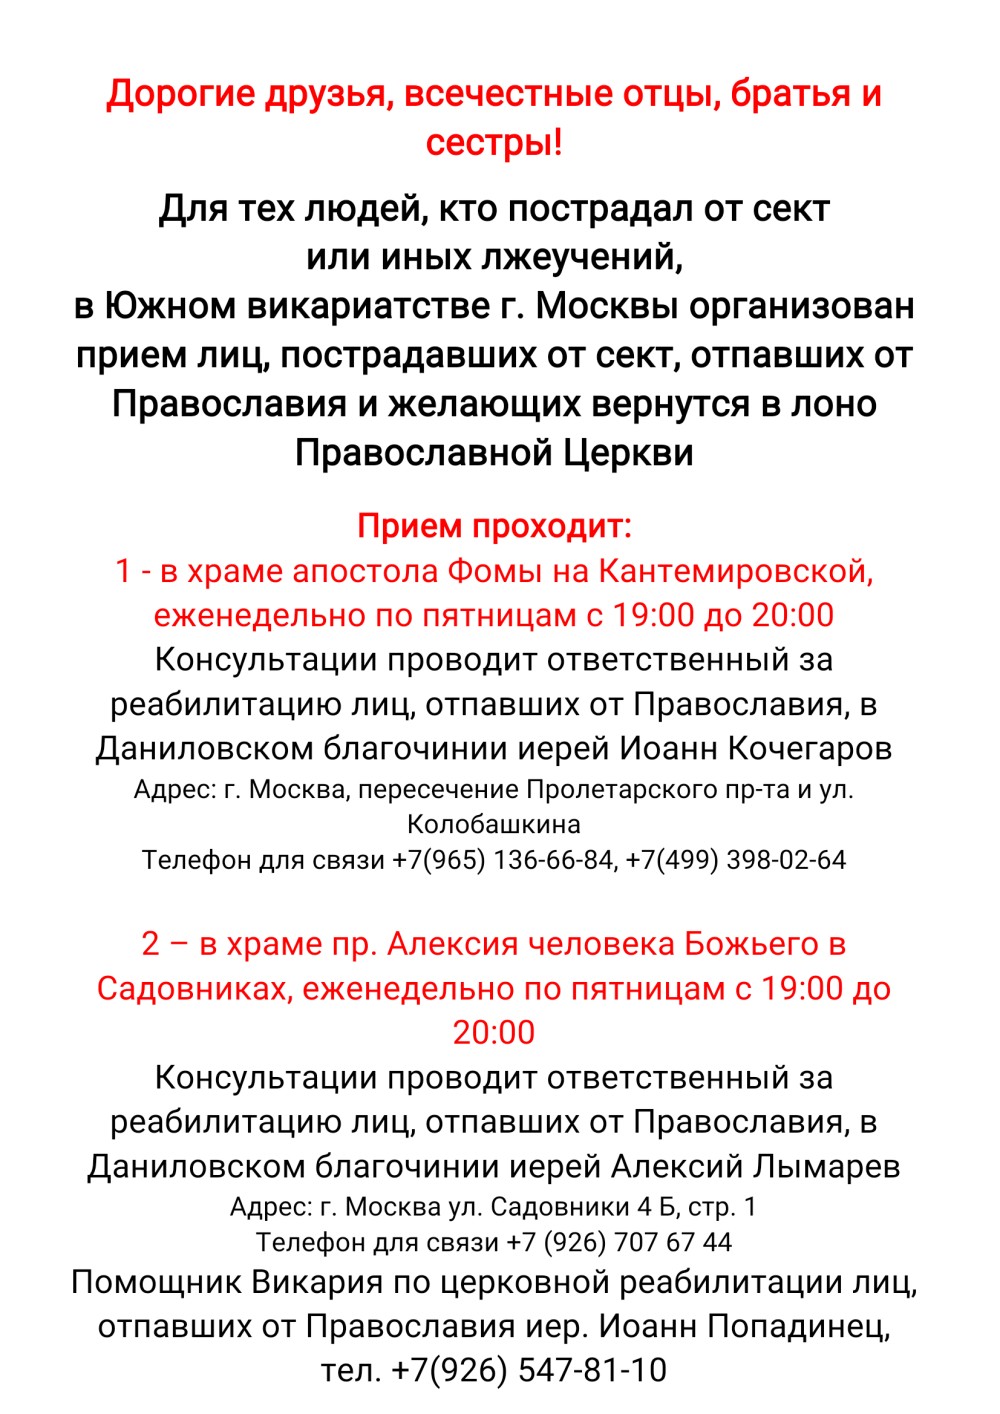 Для тех людей, кто пострадал от сект   или иных лжеучений,  в Южном викариатстве г. Москвы организован прием лиц